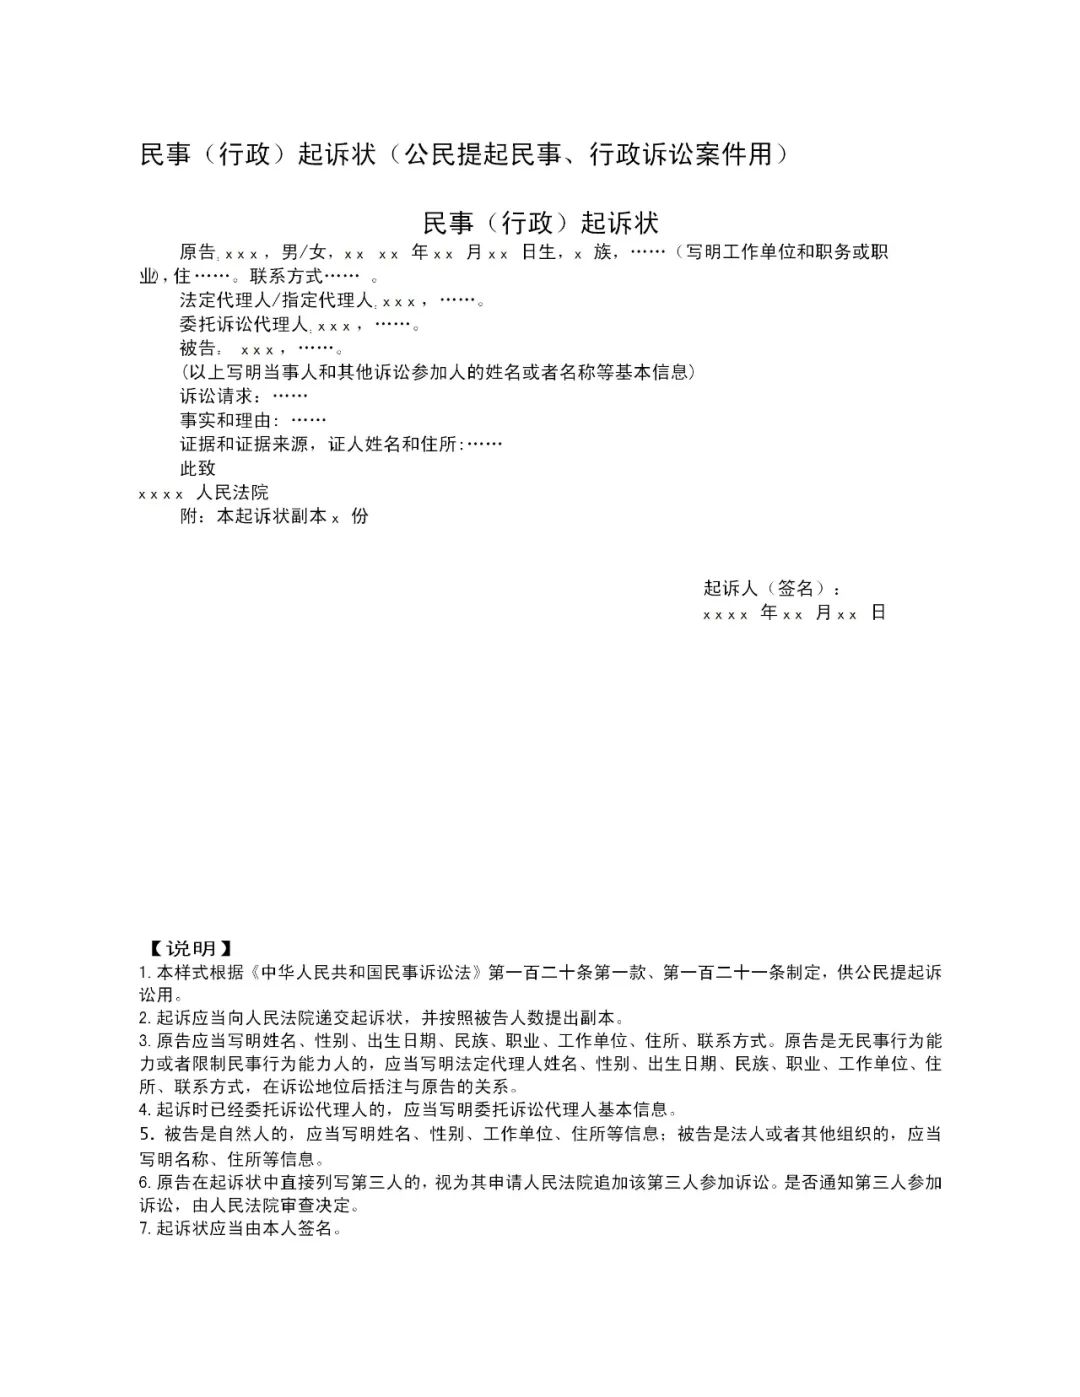 深圳离婚律师:起诉小三返还财产的案件开庭 - 知乎